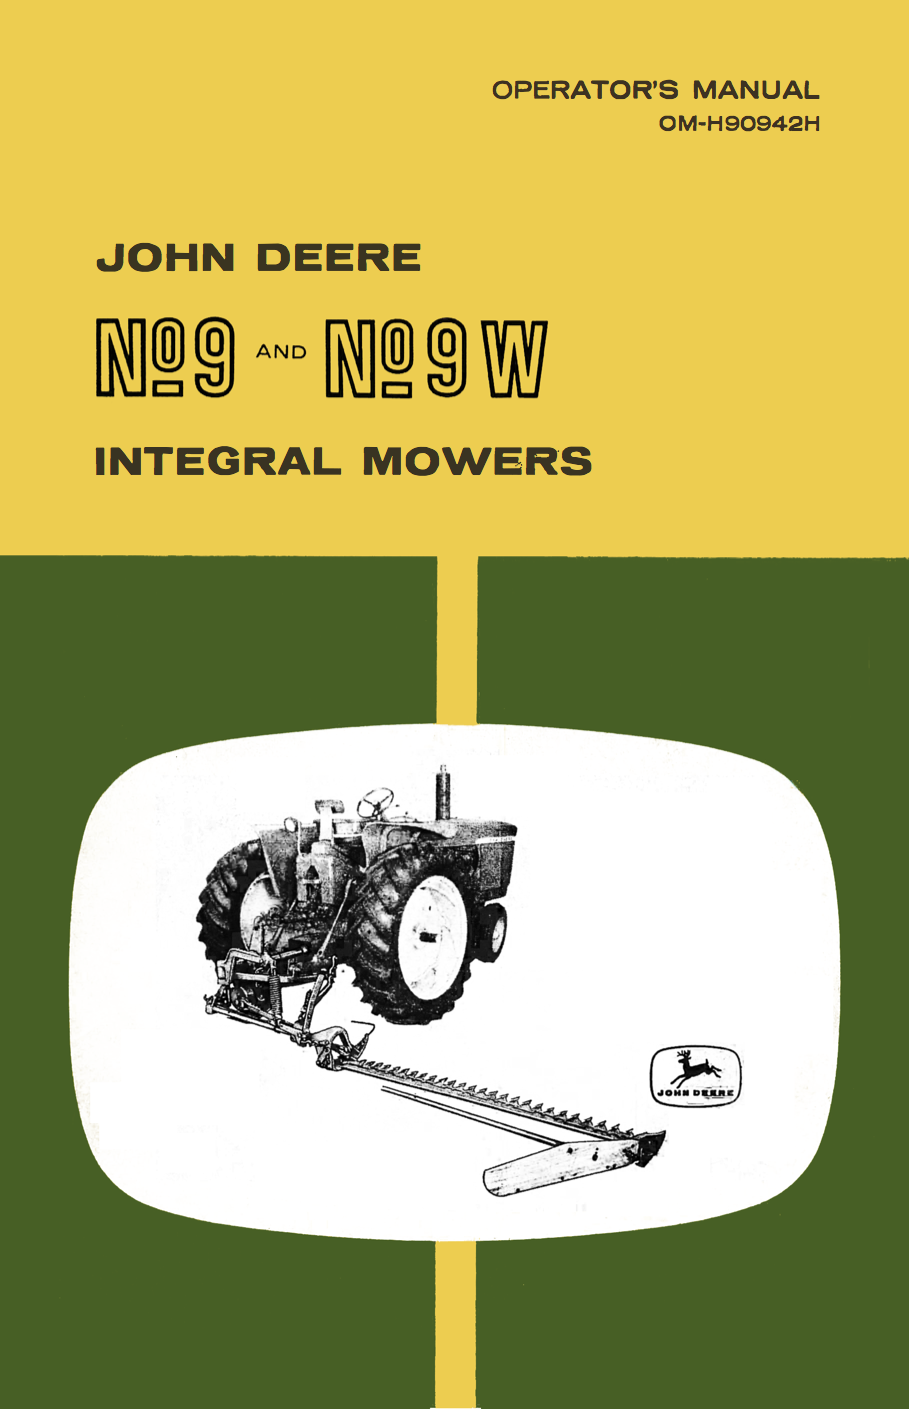 John Deere No 9 and No 9W Integral Mowers - Operator's Manual - Ag Manuals - A Provider of Digital Farm Manuals - 1